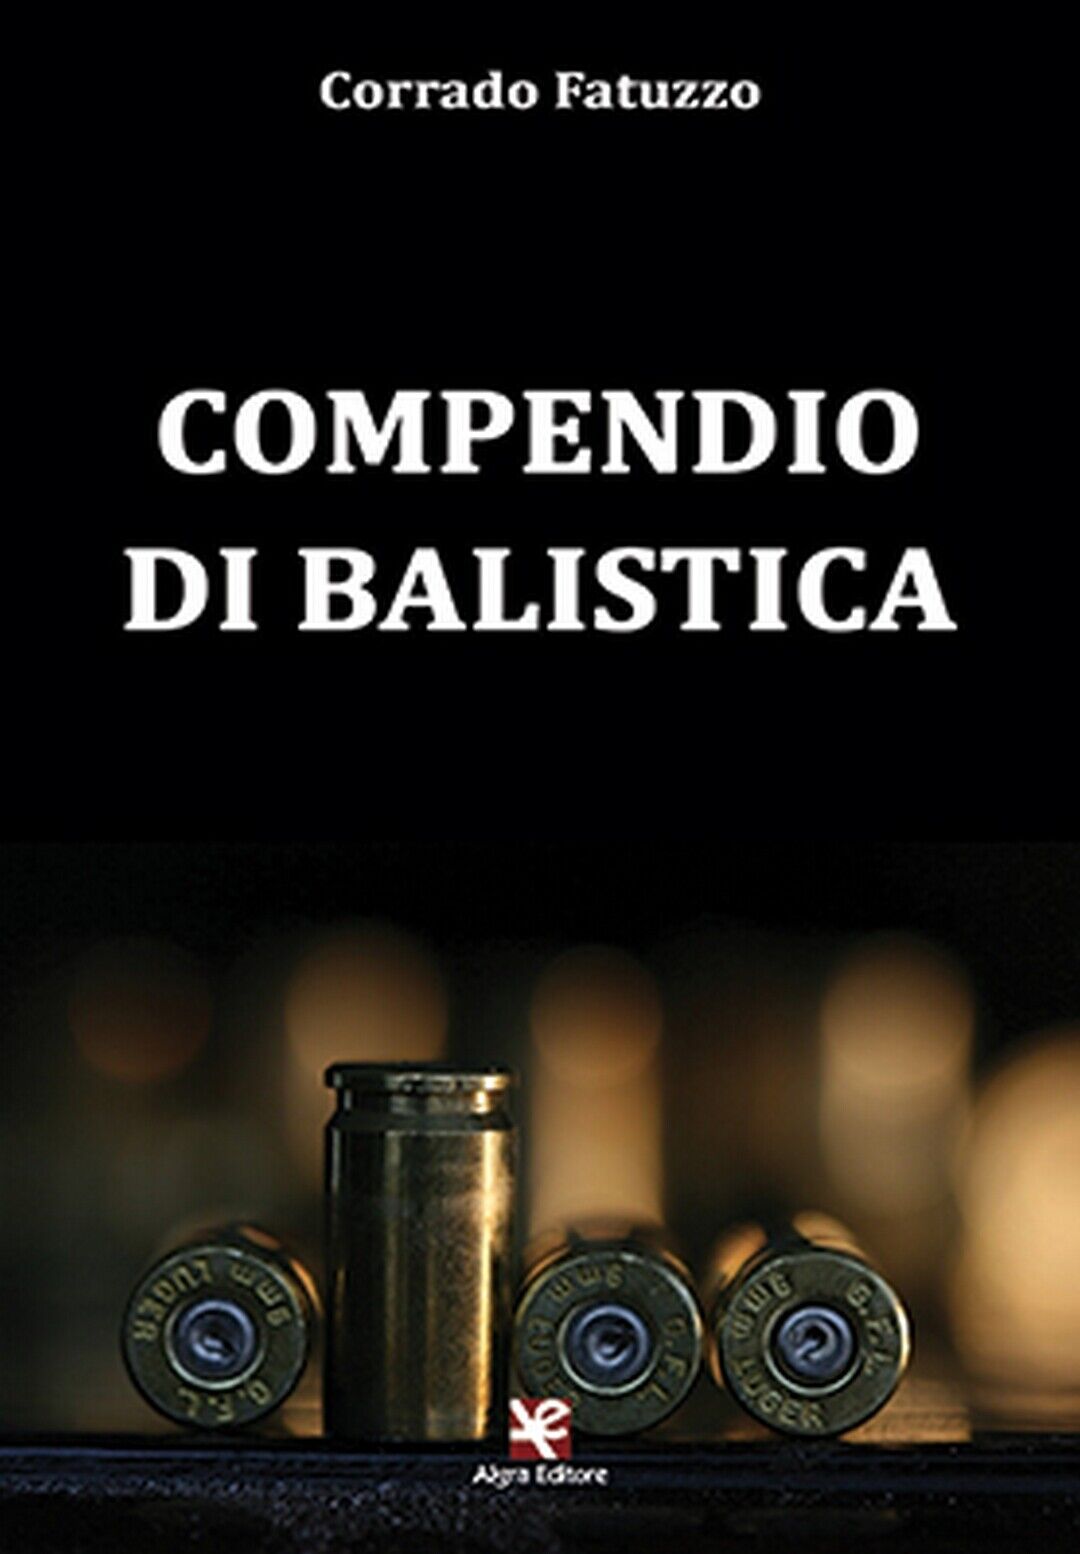 Compendio di balistica  di Corrado Fatuzzo,  Algra Editore